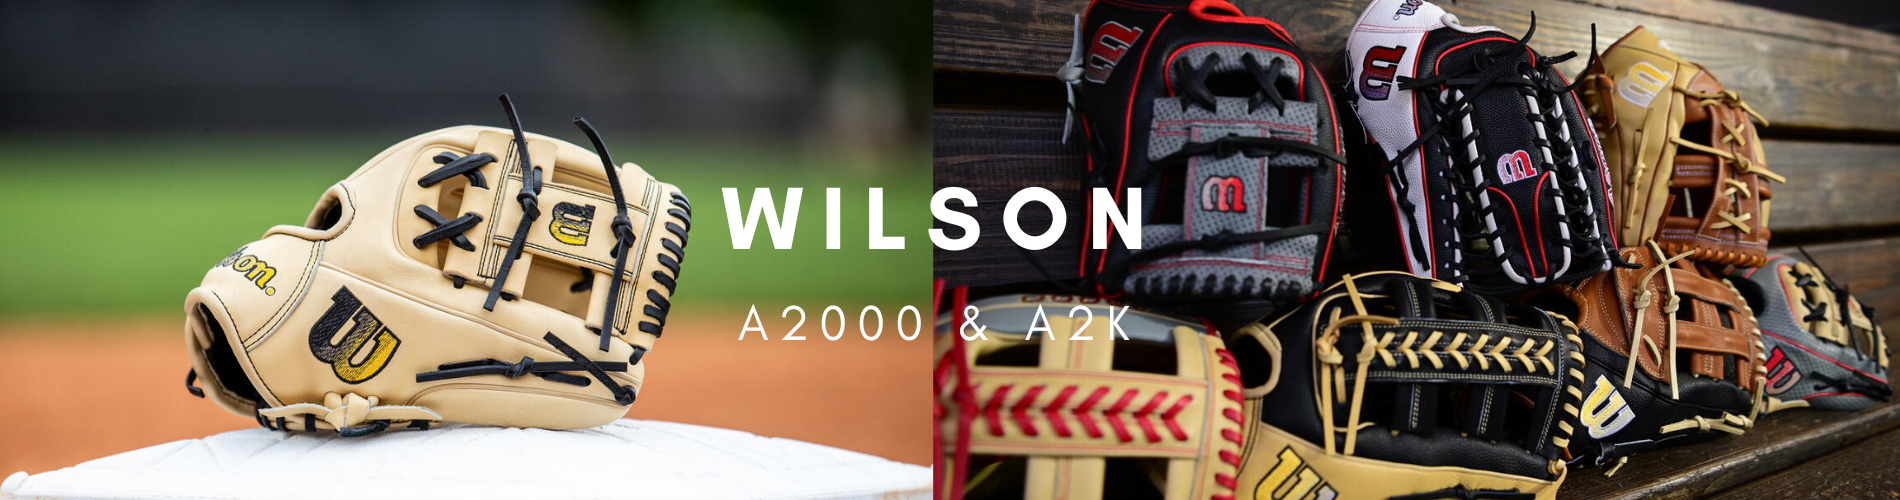 Wilson A2000 & A2K